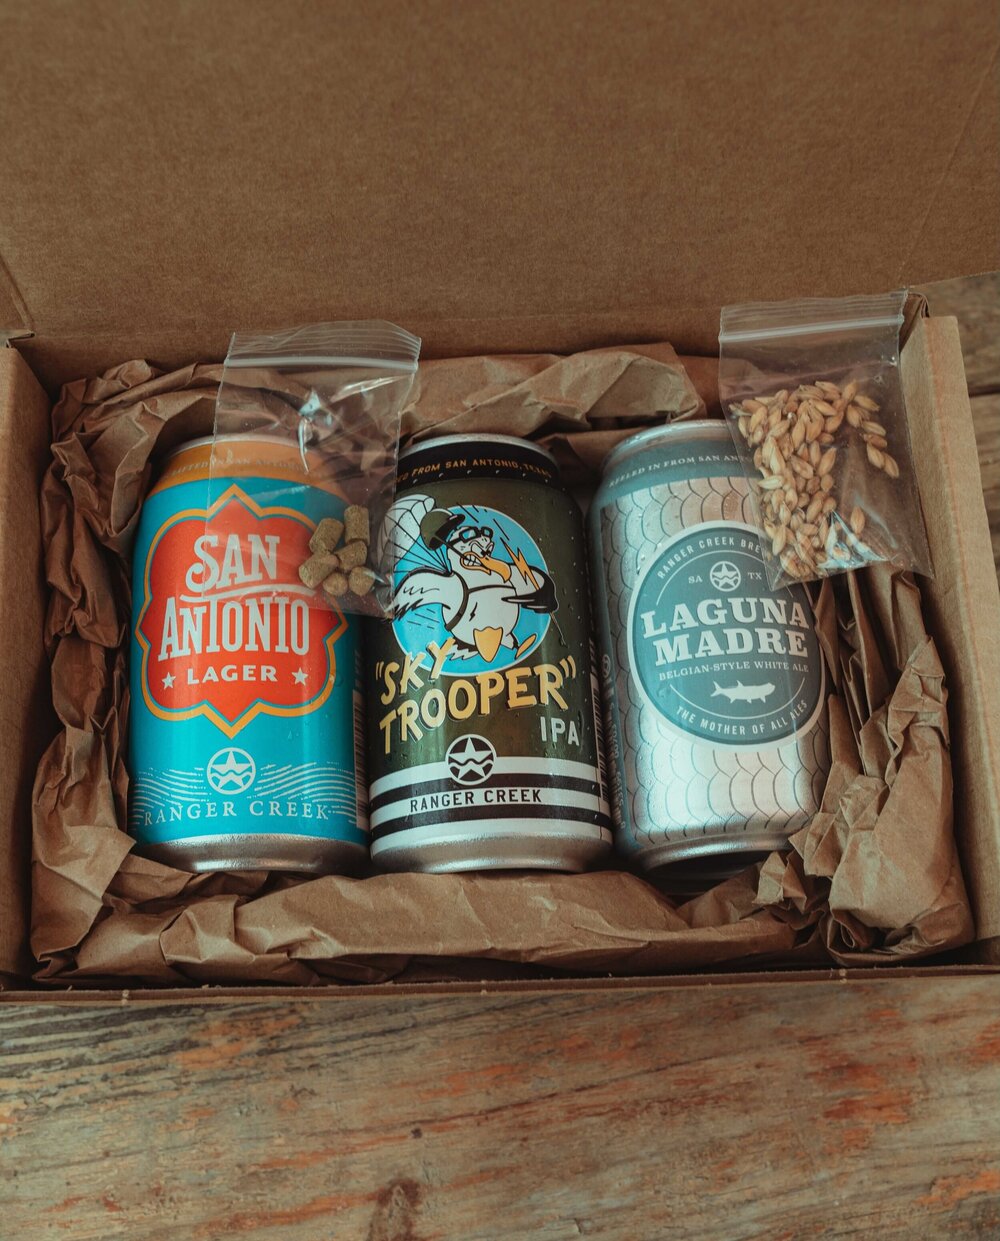 Ranger Creek Enthusiast Beer Sample Kit Virtual Tasting Experience by Ranger Creek Brewing & Distilling